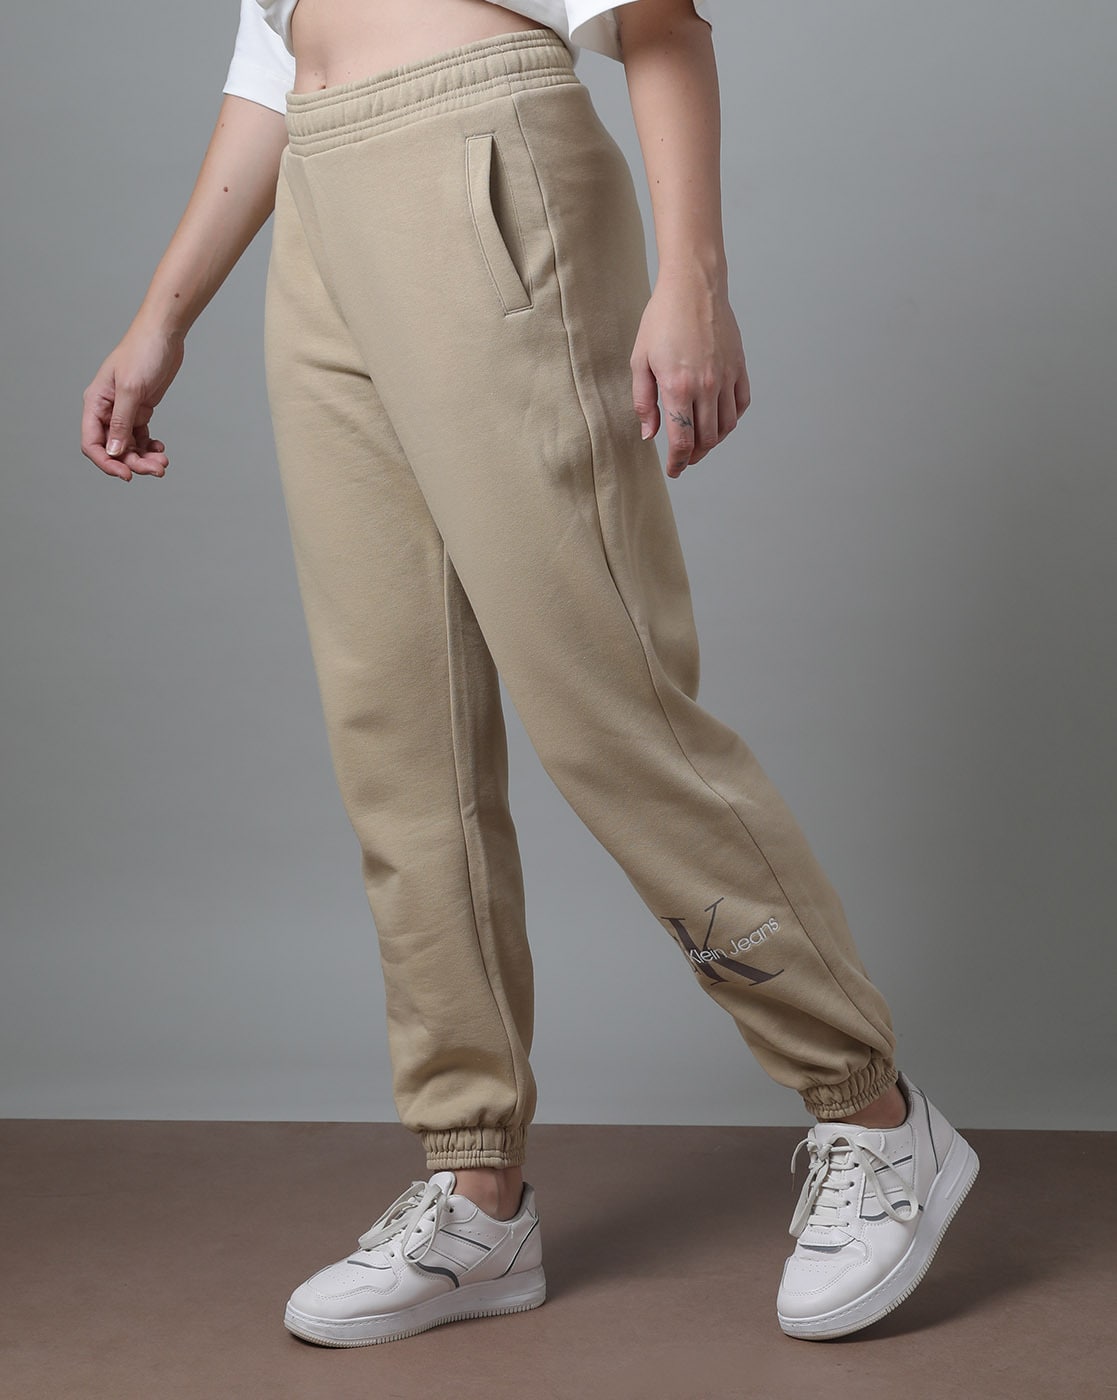 Calvin Klein Zipper Leather Pants for Women | Mercari